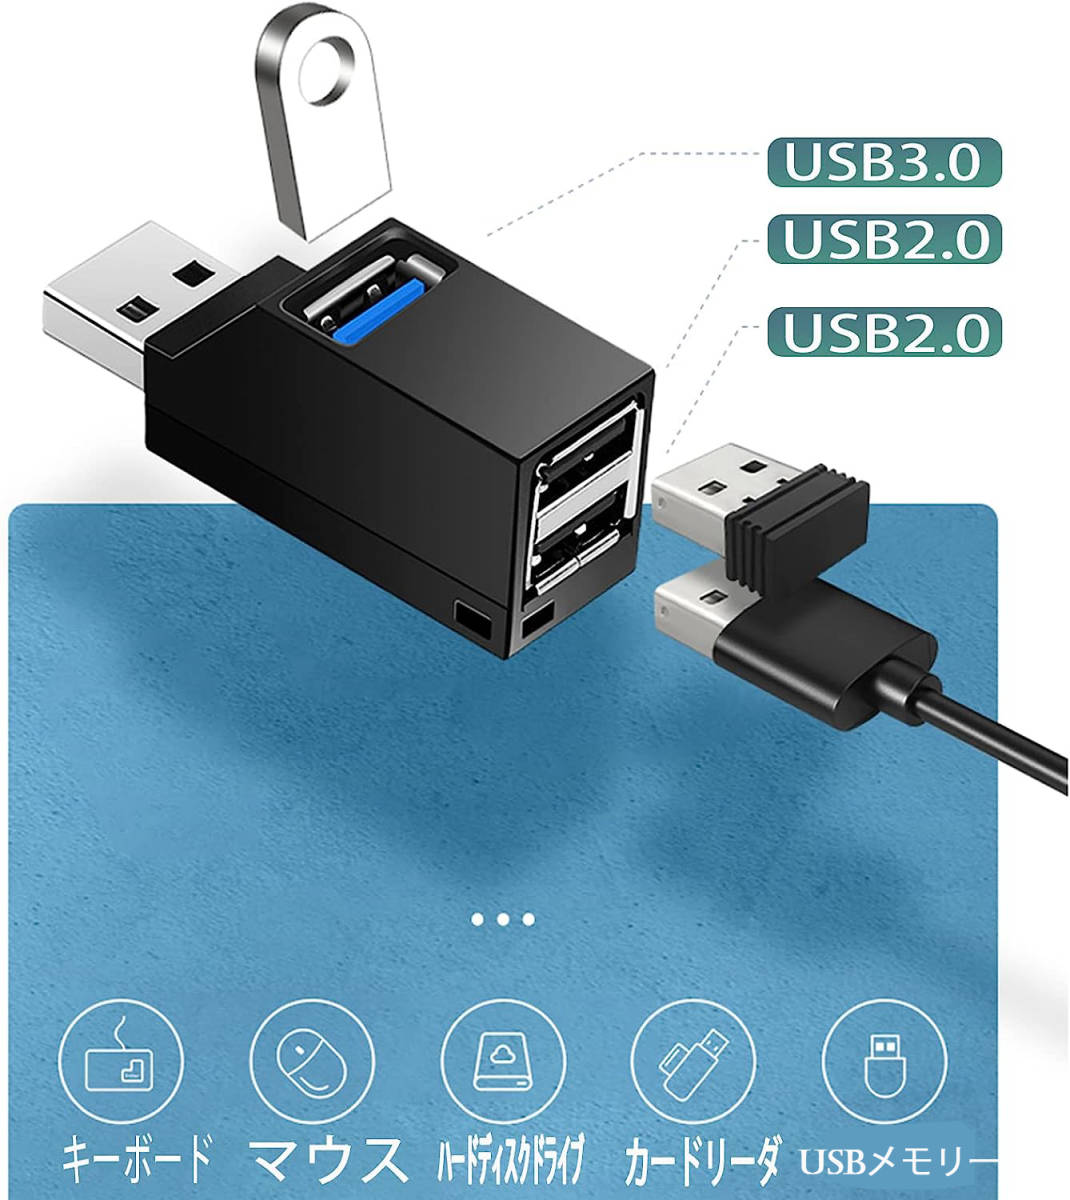 新品 超小型 USB3.0ハブ 3ポート USB3.0 1ポート+USB2.0 2ポート 拡張 コンパクト ポータブル機能付き ノートパソコンと他の互換性_画像2